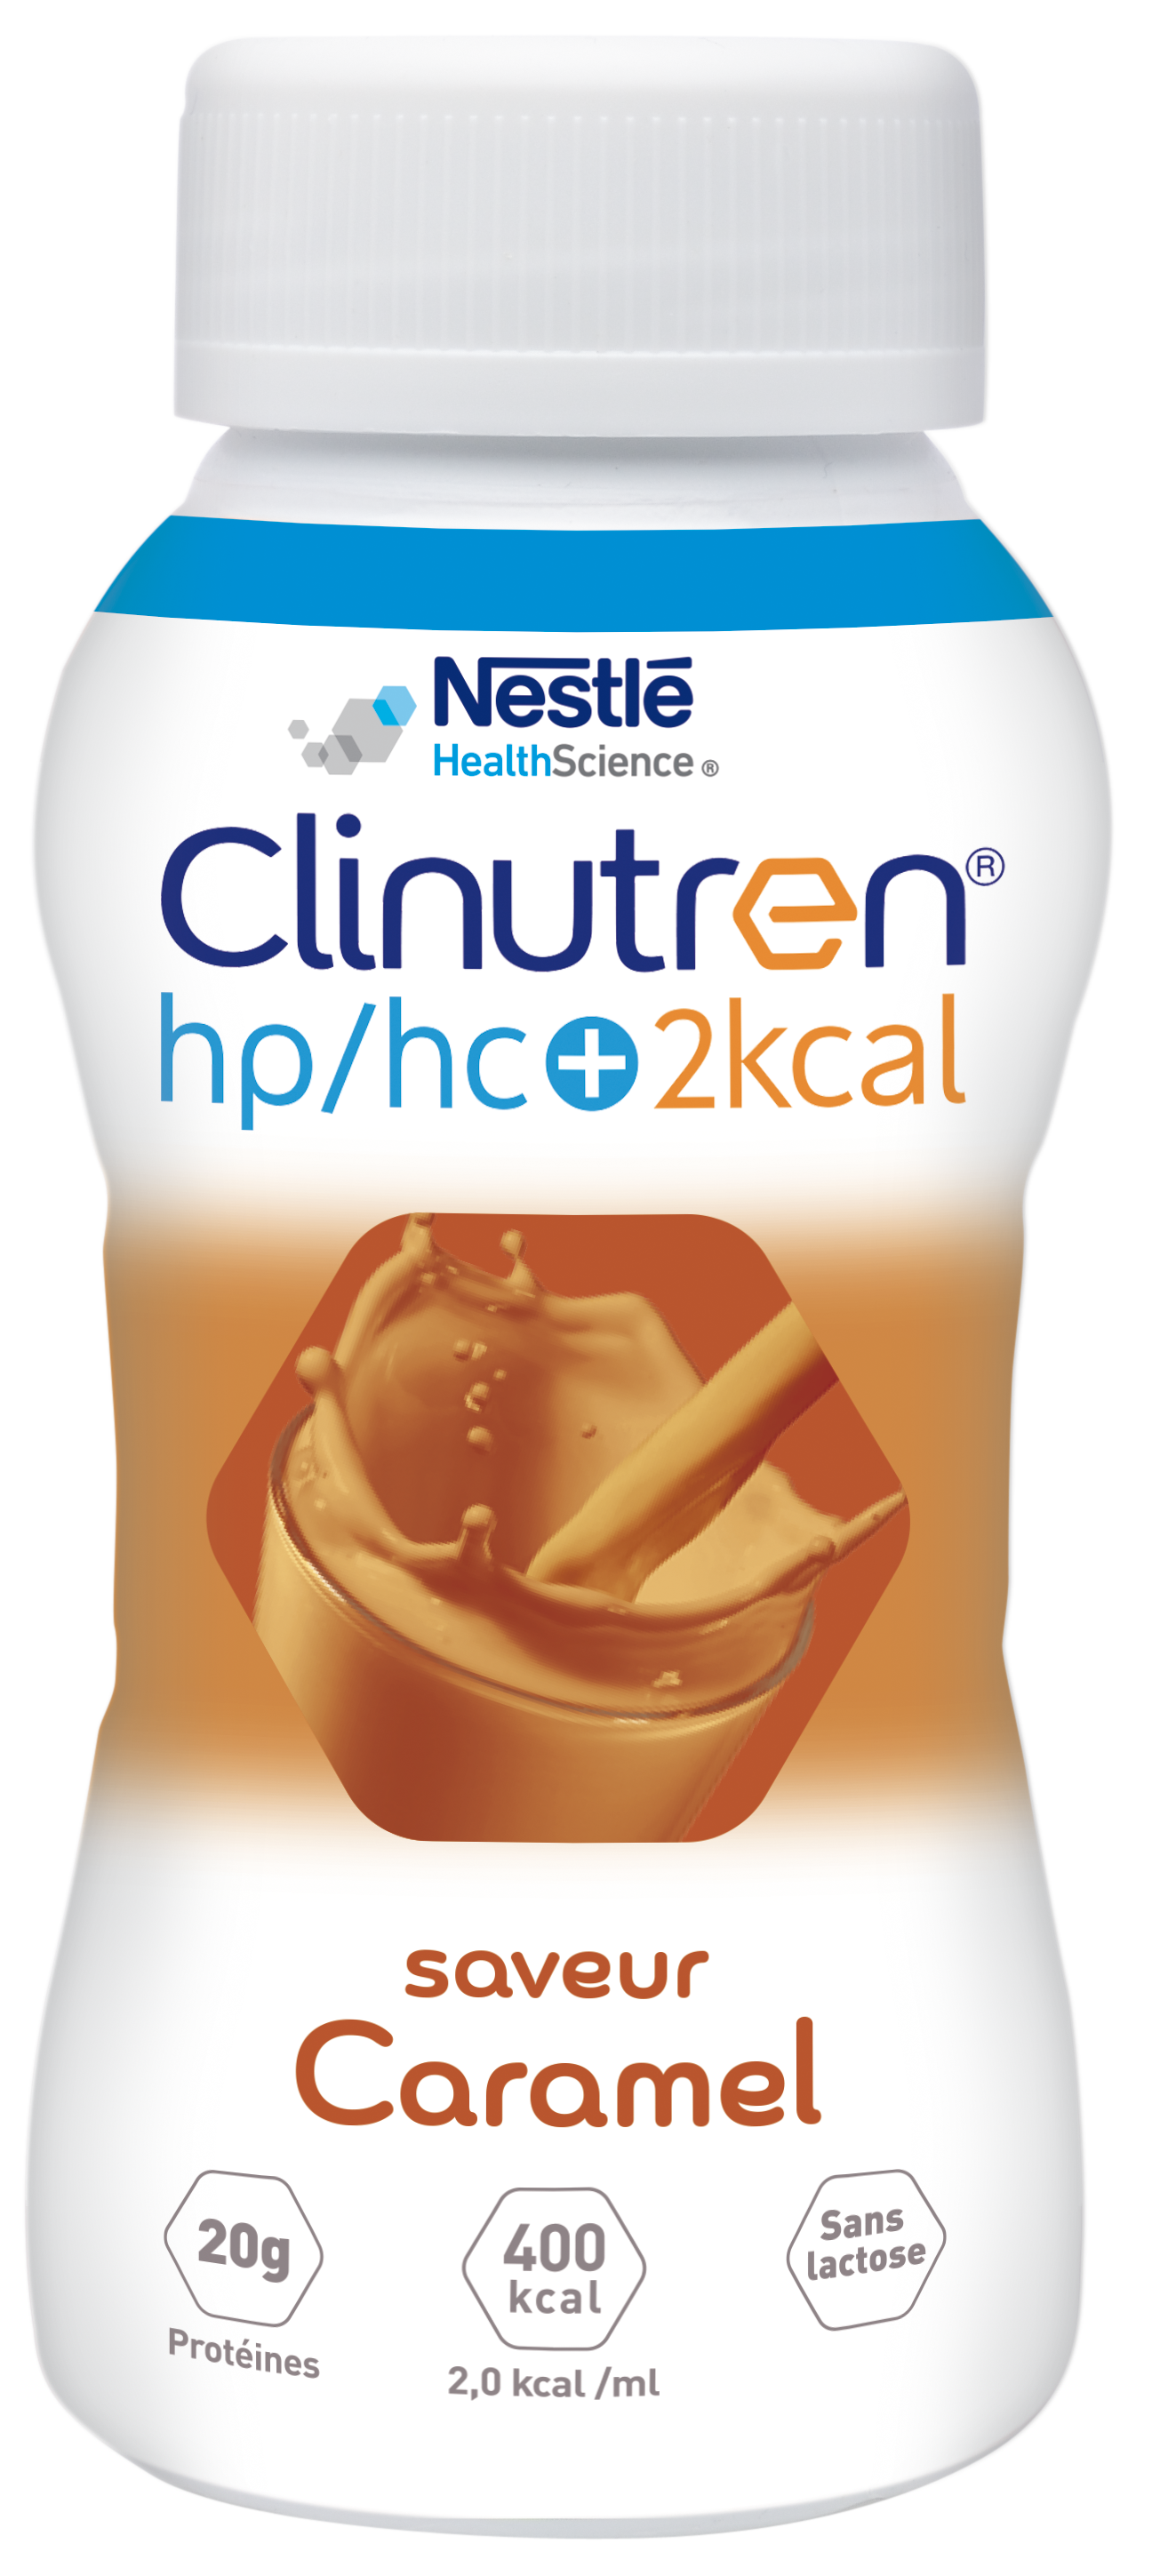 Clinutren HPHC + 2kcal 